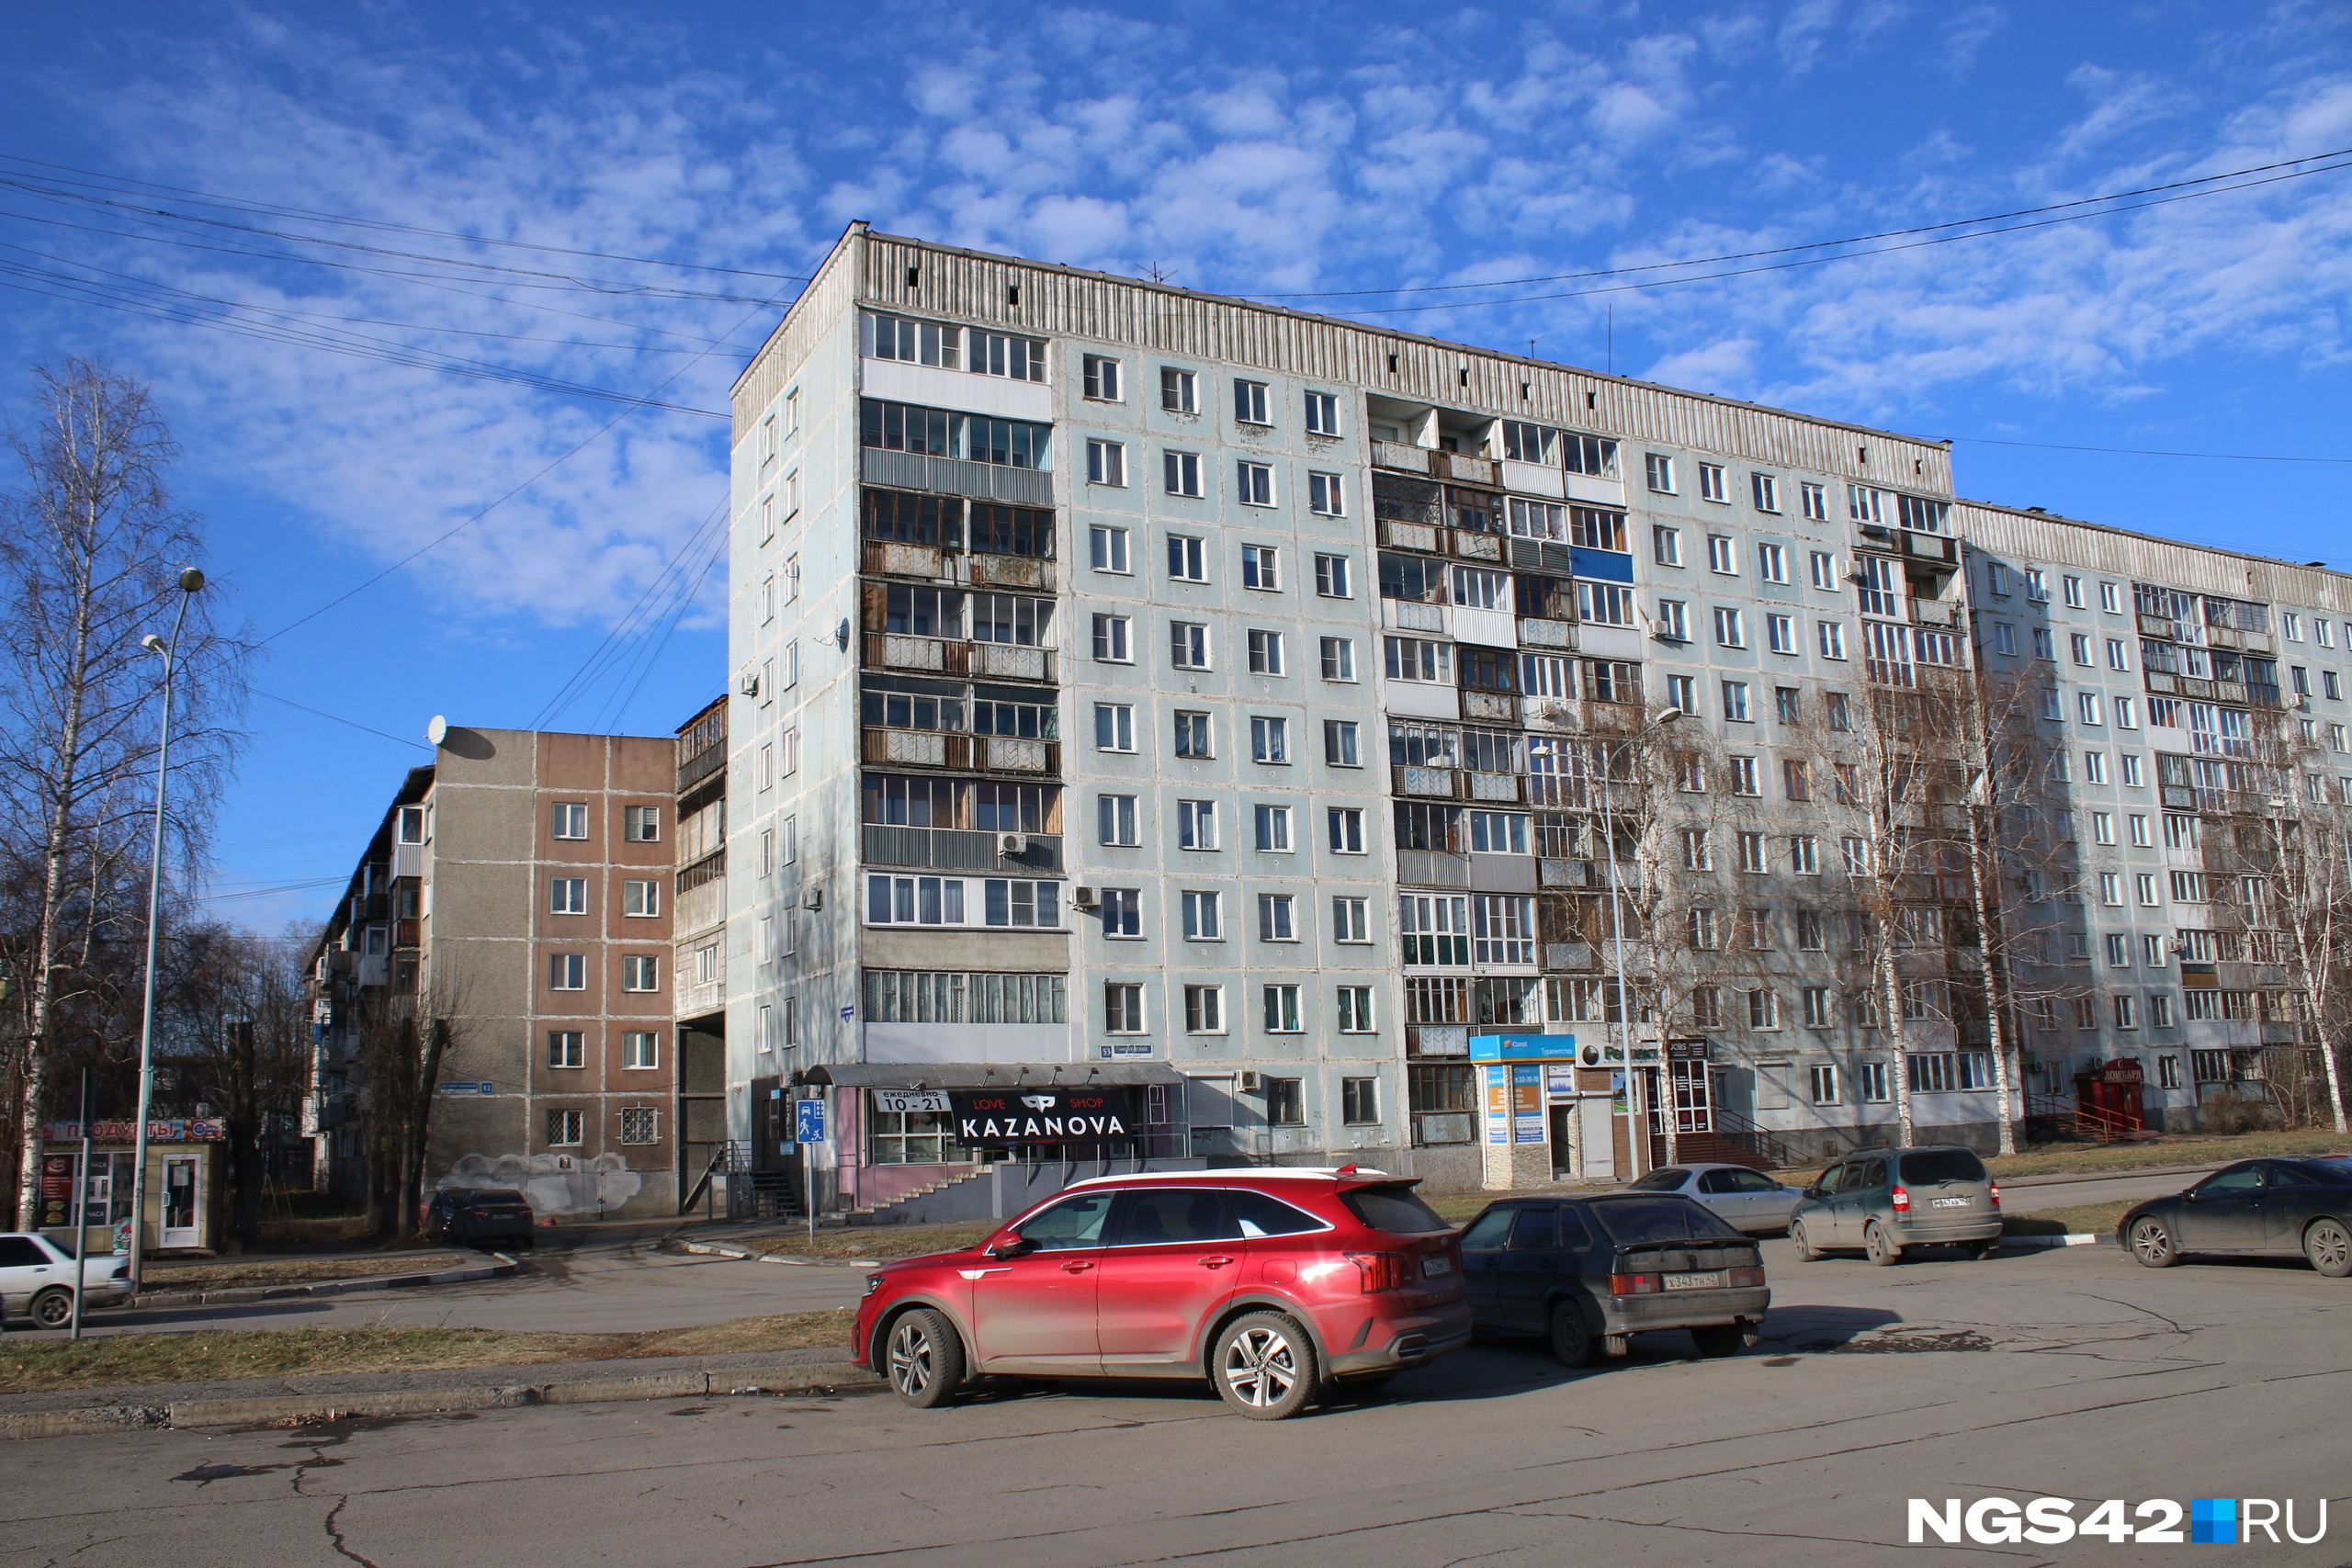 Дом маньяка находится напротив площади Общественных Мероприятий Центрального района Новокузнецка